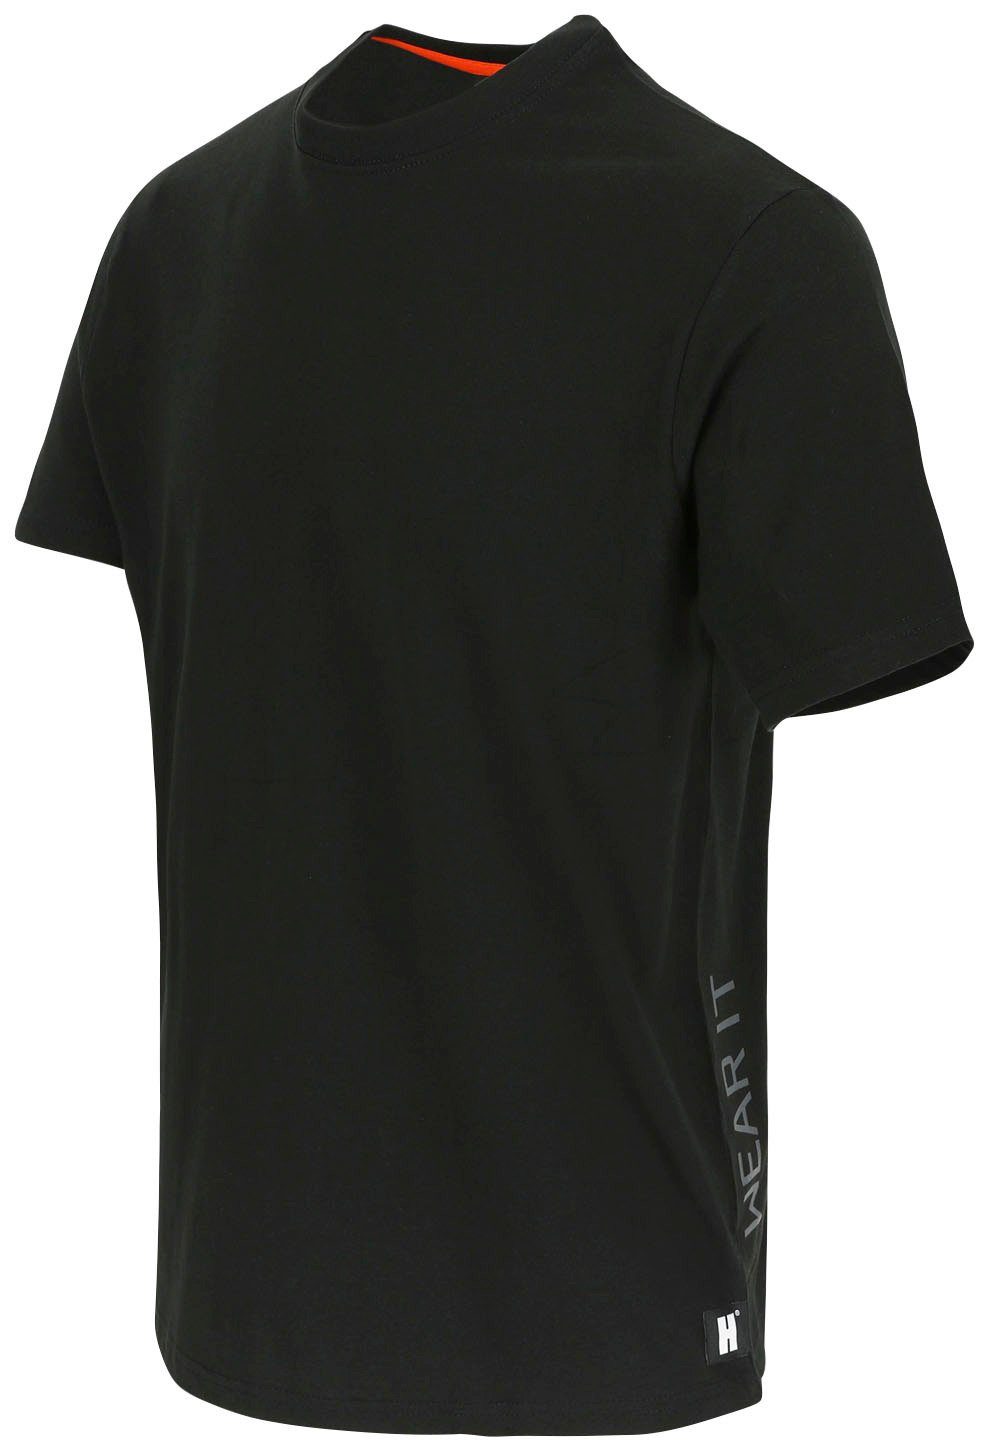 Herock T-Shirt Callius T-Shirt Ärmel, Rundhalsausschnitt, Rippstrickkragen kurze kurze Herock®-Aufdruck, schwarz Ärmel